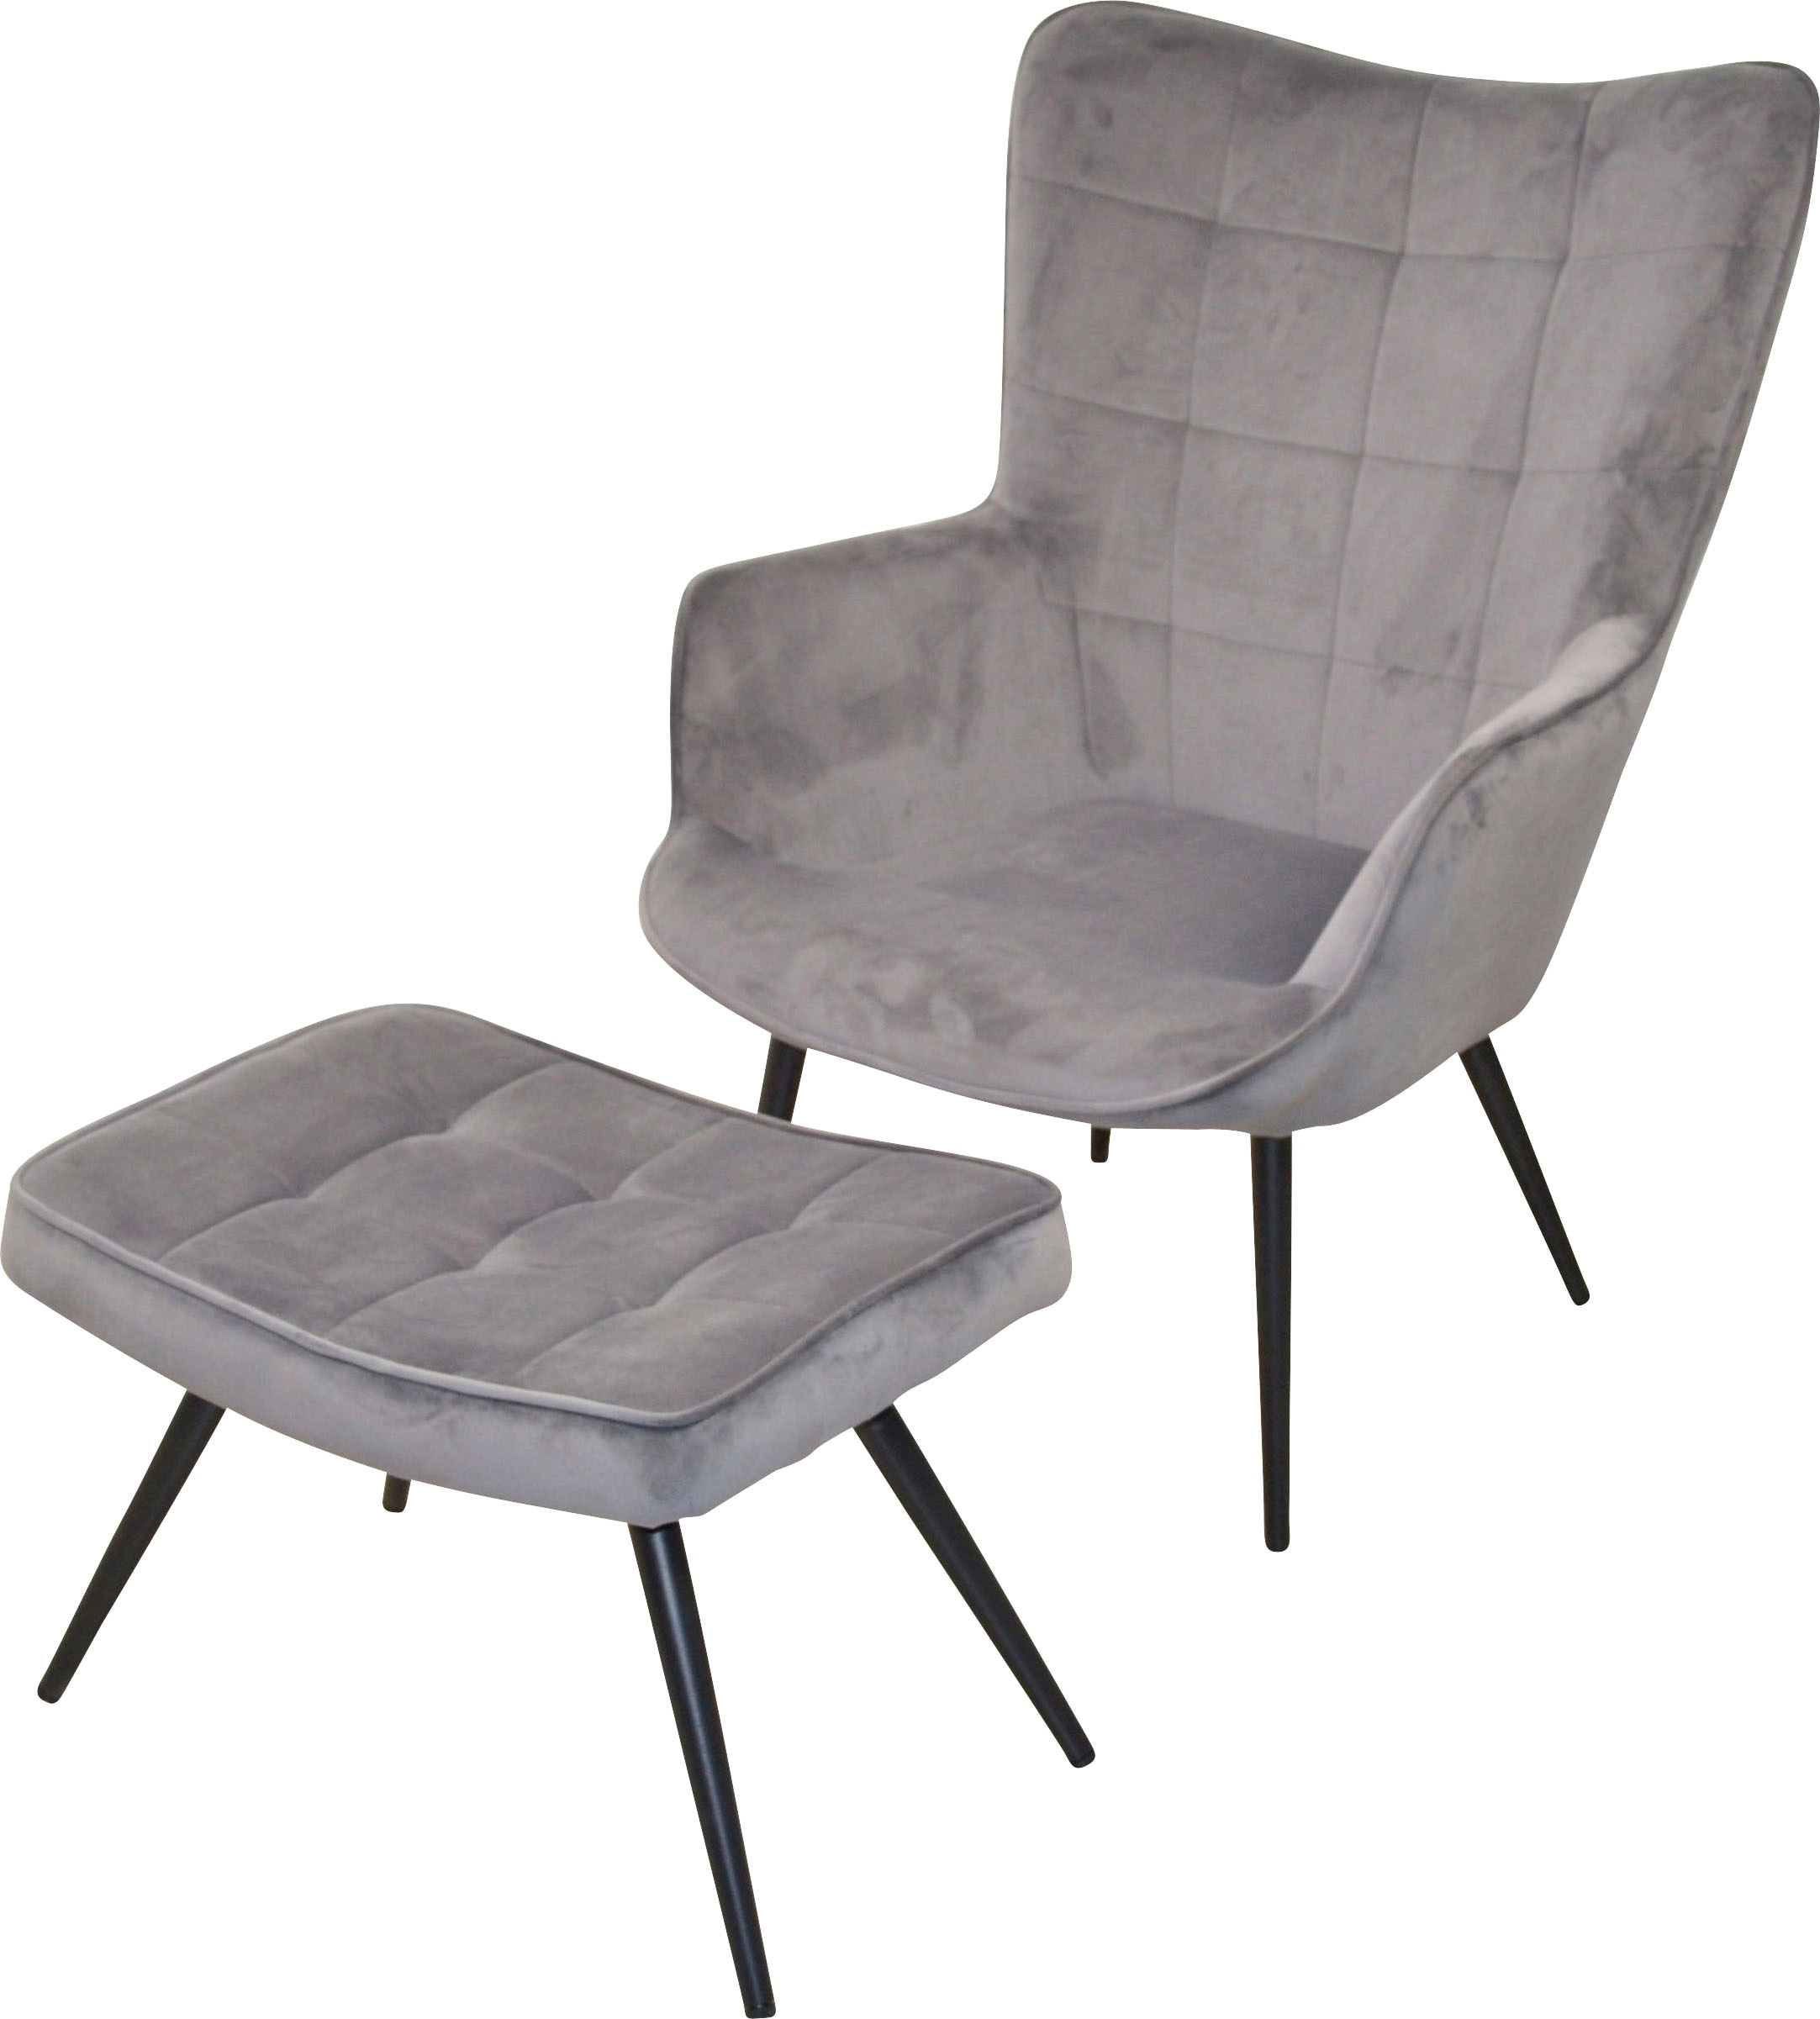 HOFMANN LIVING AND MORE Sessel »Jaro«, Polstersessel mit Beinen aus Stahlrohr, schwarz lackiert